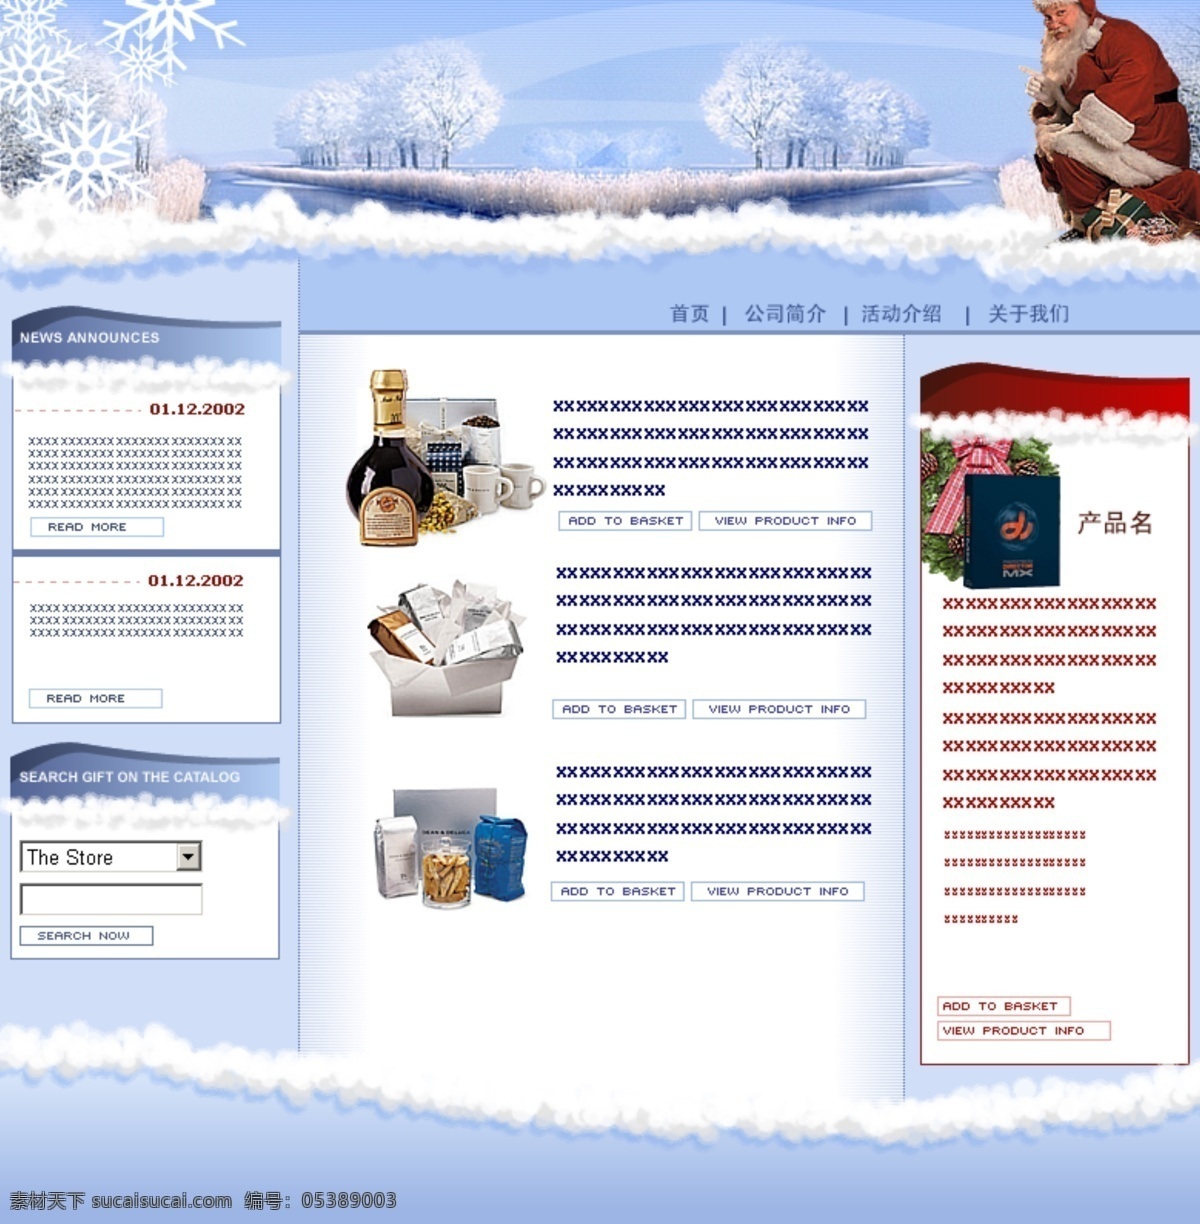 圣诞 网页 产品介绍 圣诞模版 圣诞网页 网页模板 网页模版 雪花 源文件 中文模版 网页素材